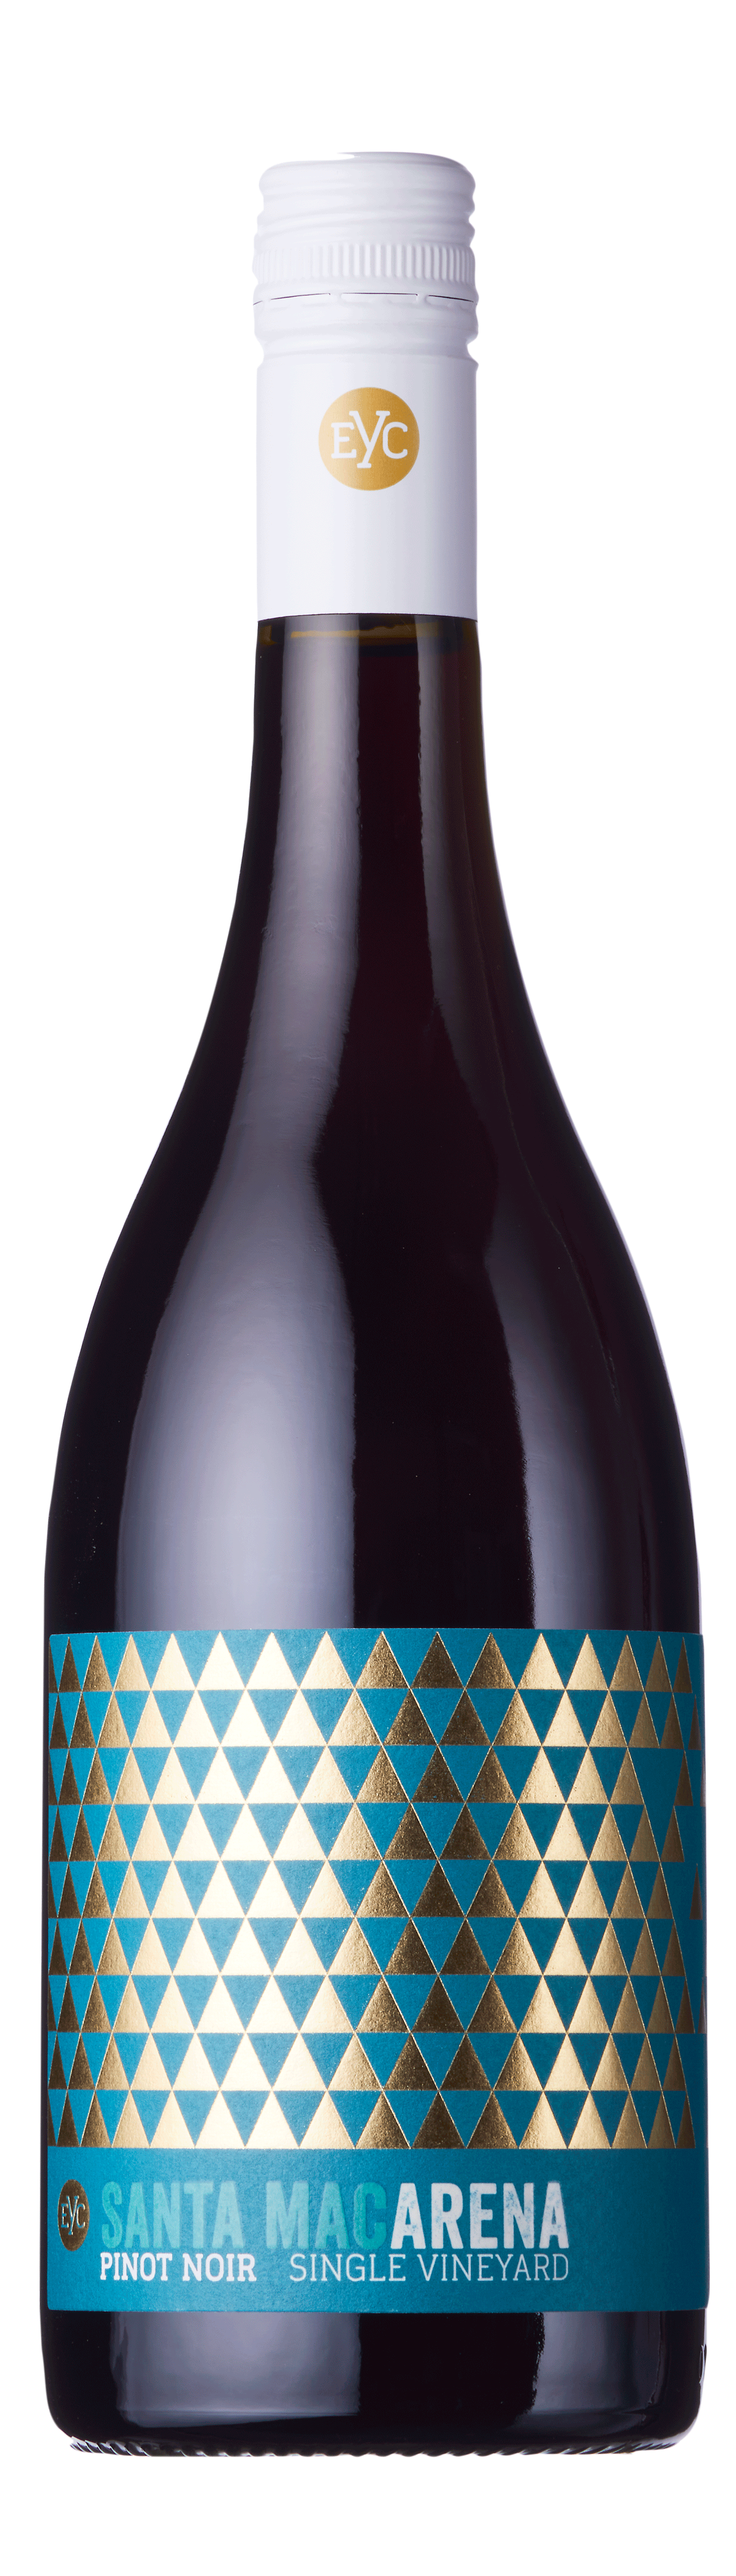 Espinos y Cardos, Santa Macarena Single Vineyard Pinot Noir, Aconcagua, Chile, 2021